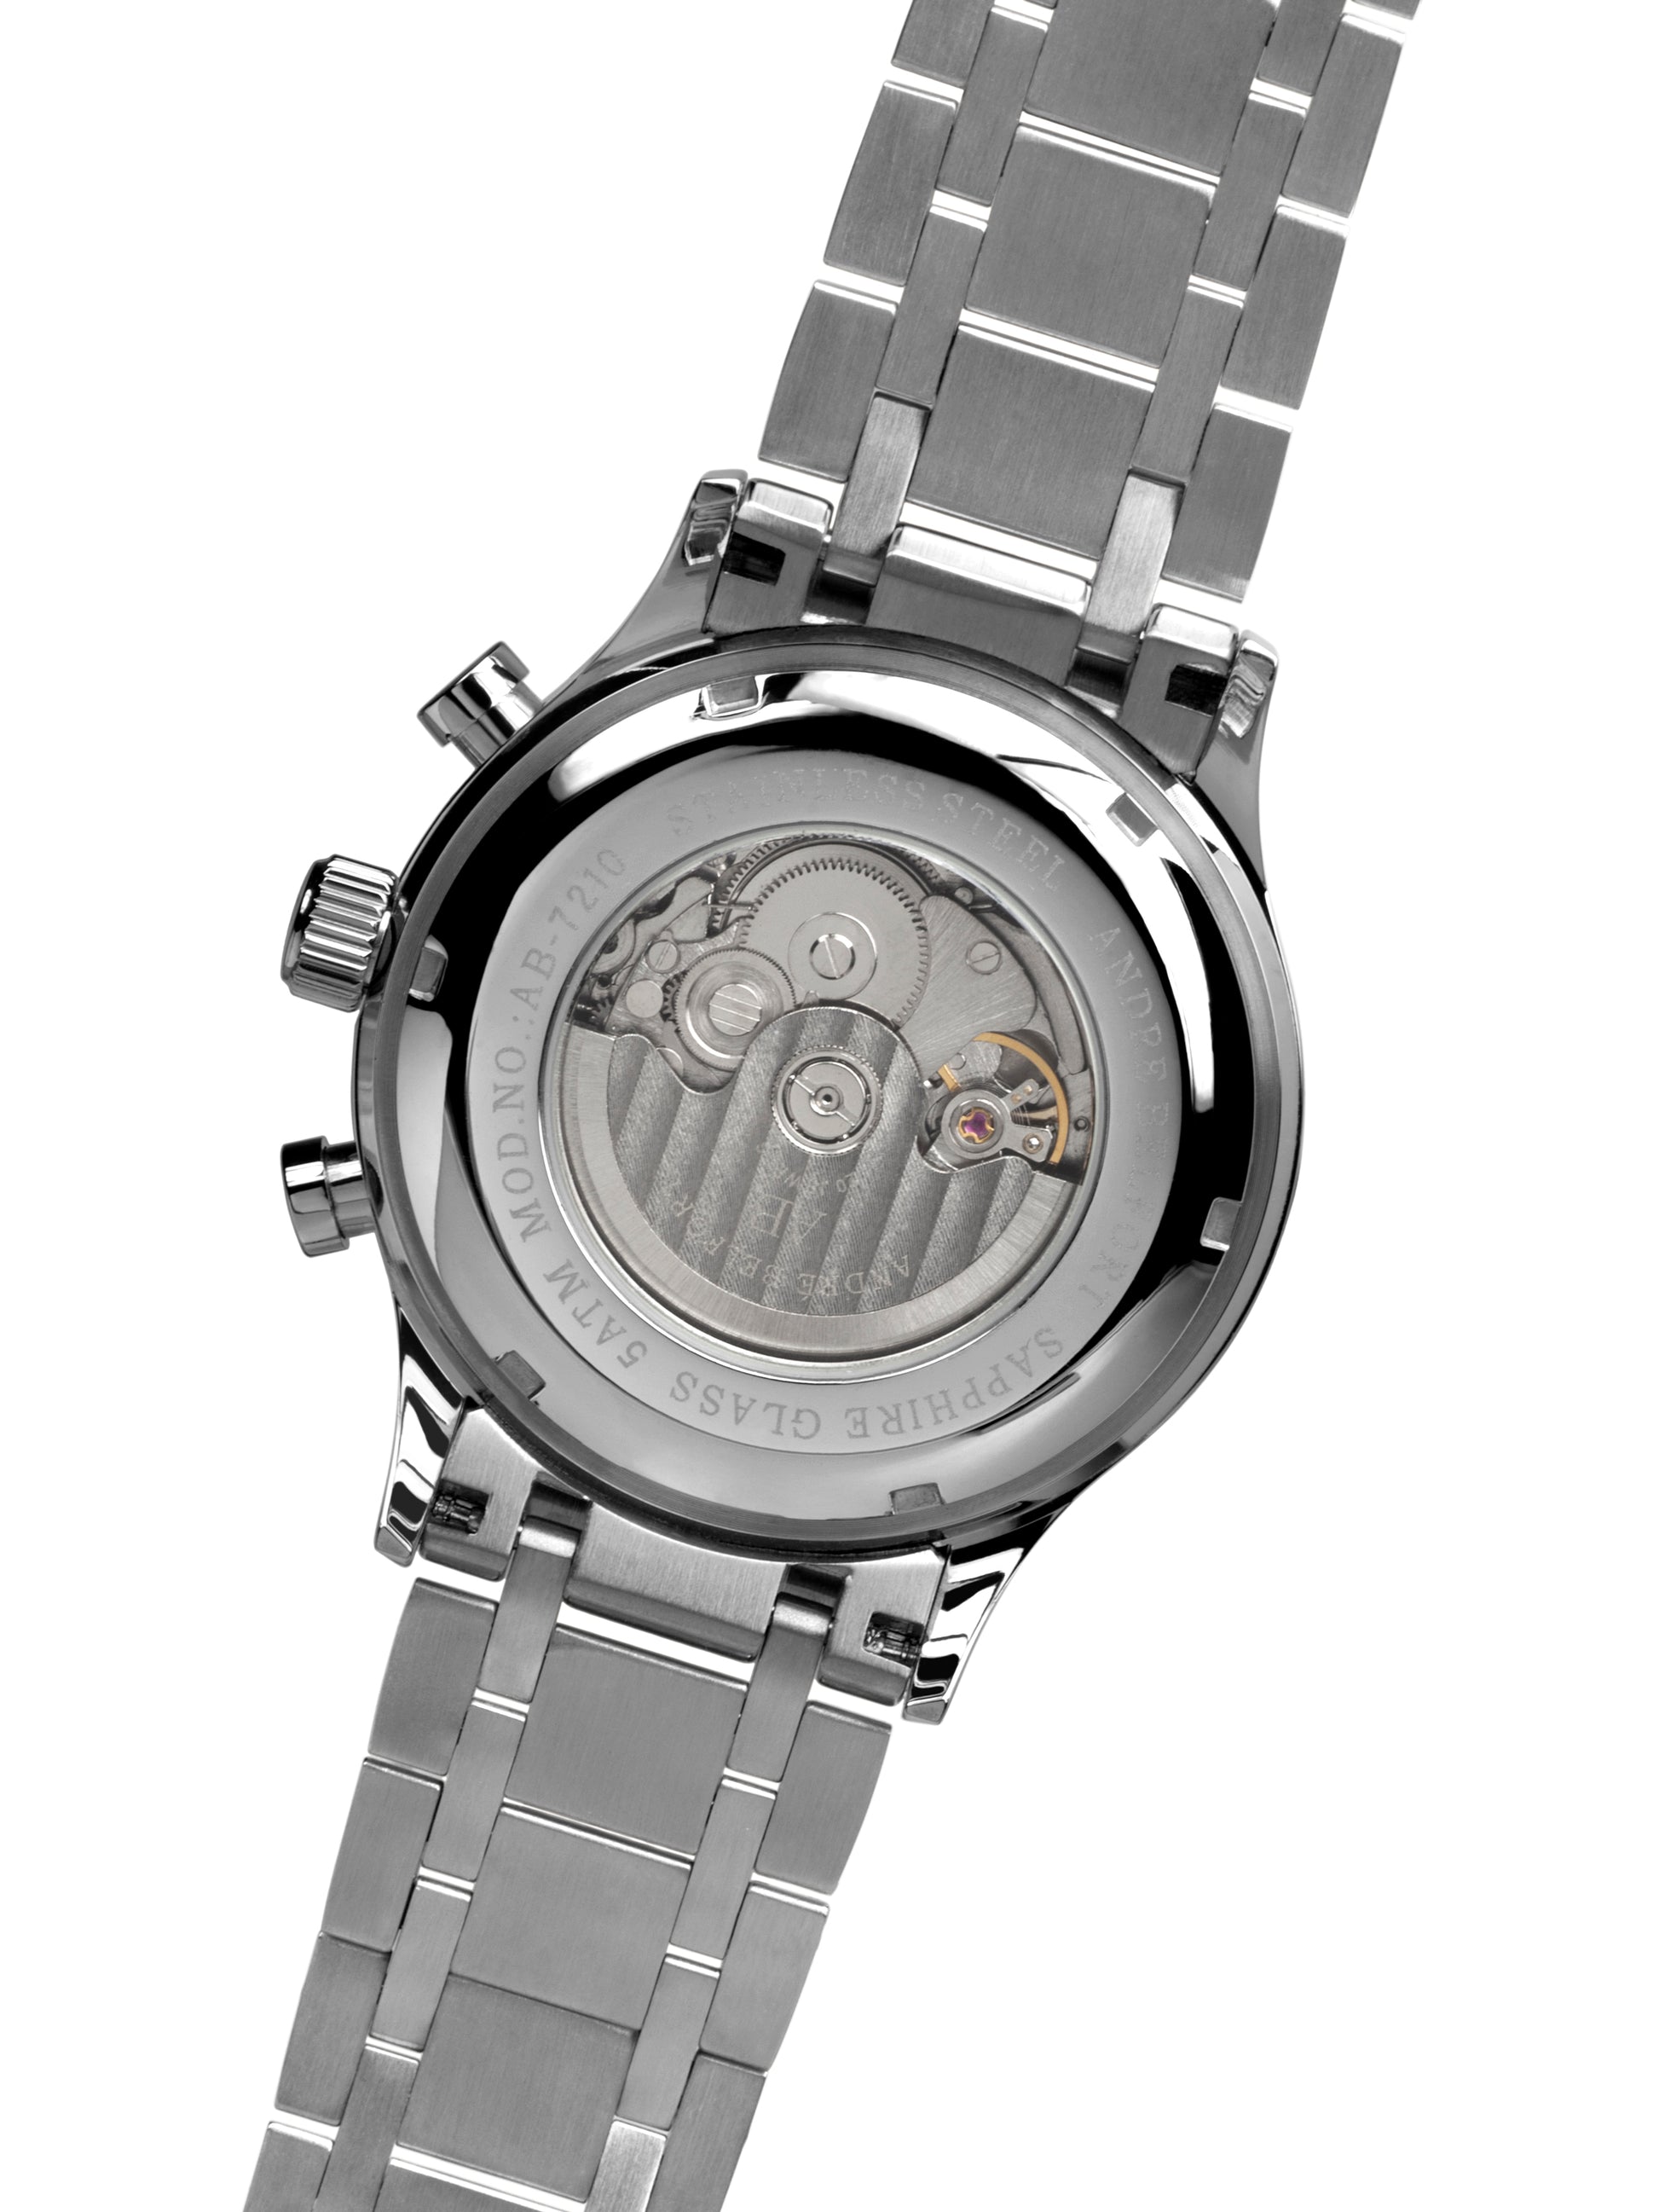 Automatic watches — Navigateur — André Belfort — silver